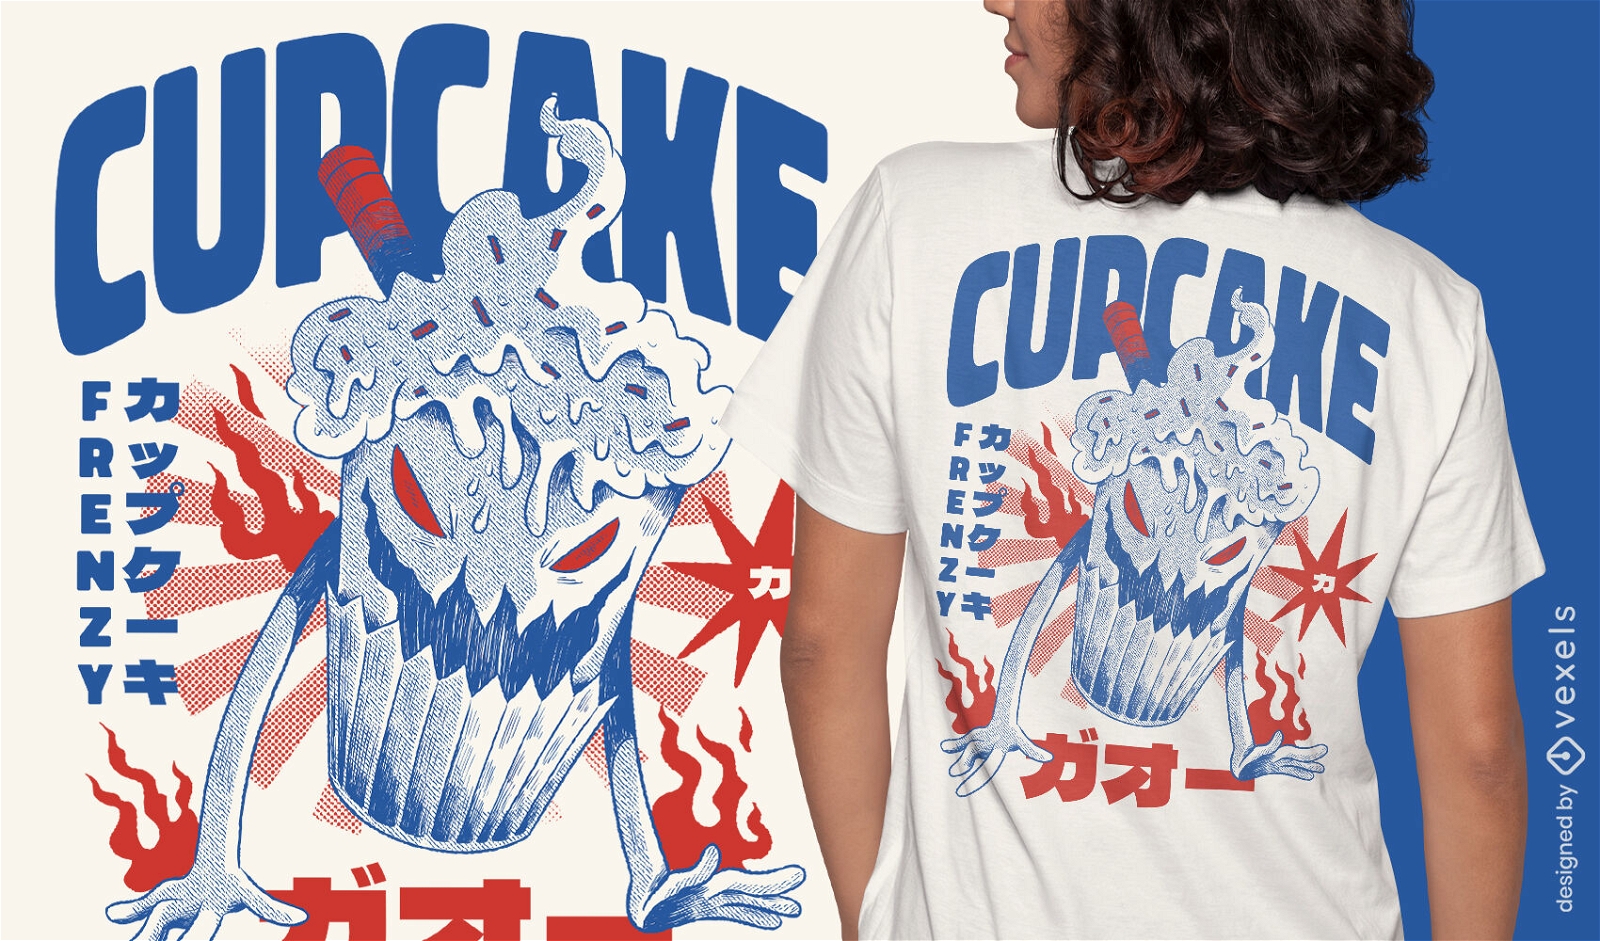 Dise?o de camiseta de monstruo de cupcake japon?s